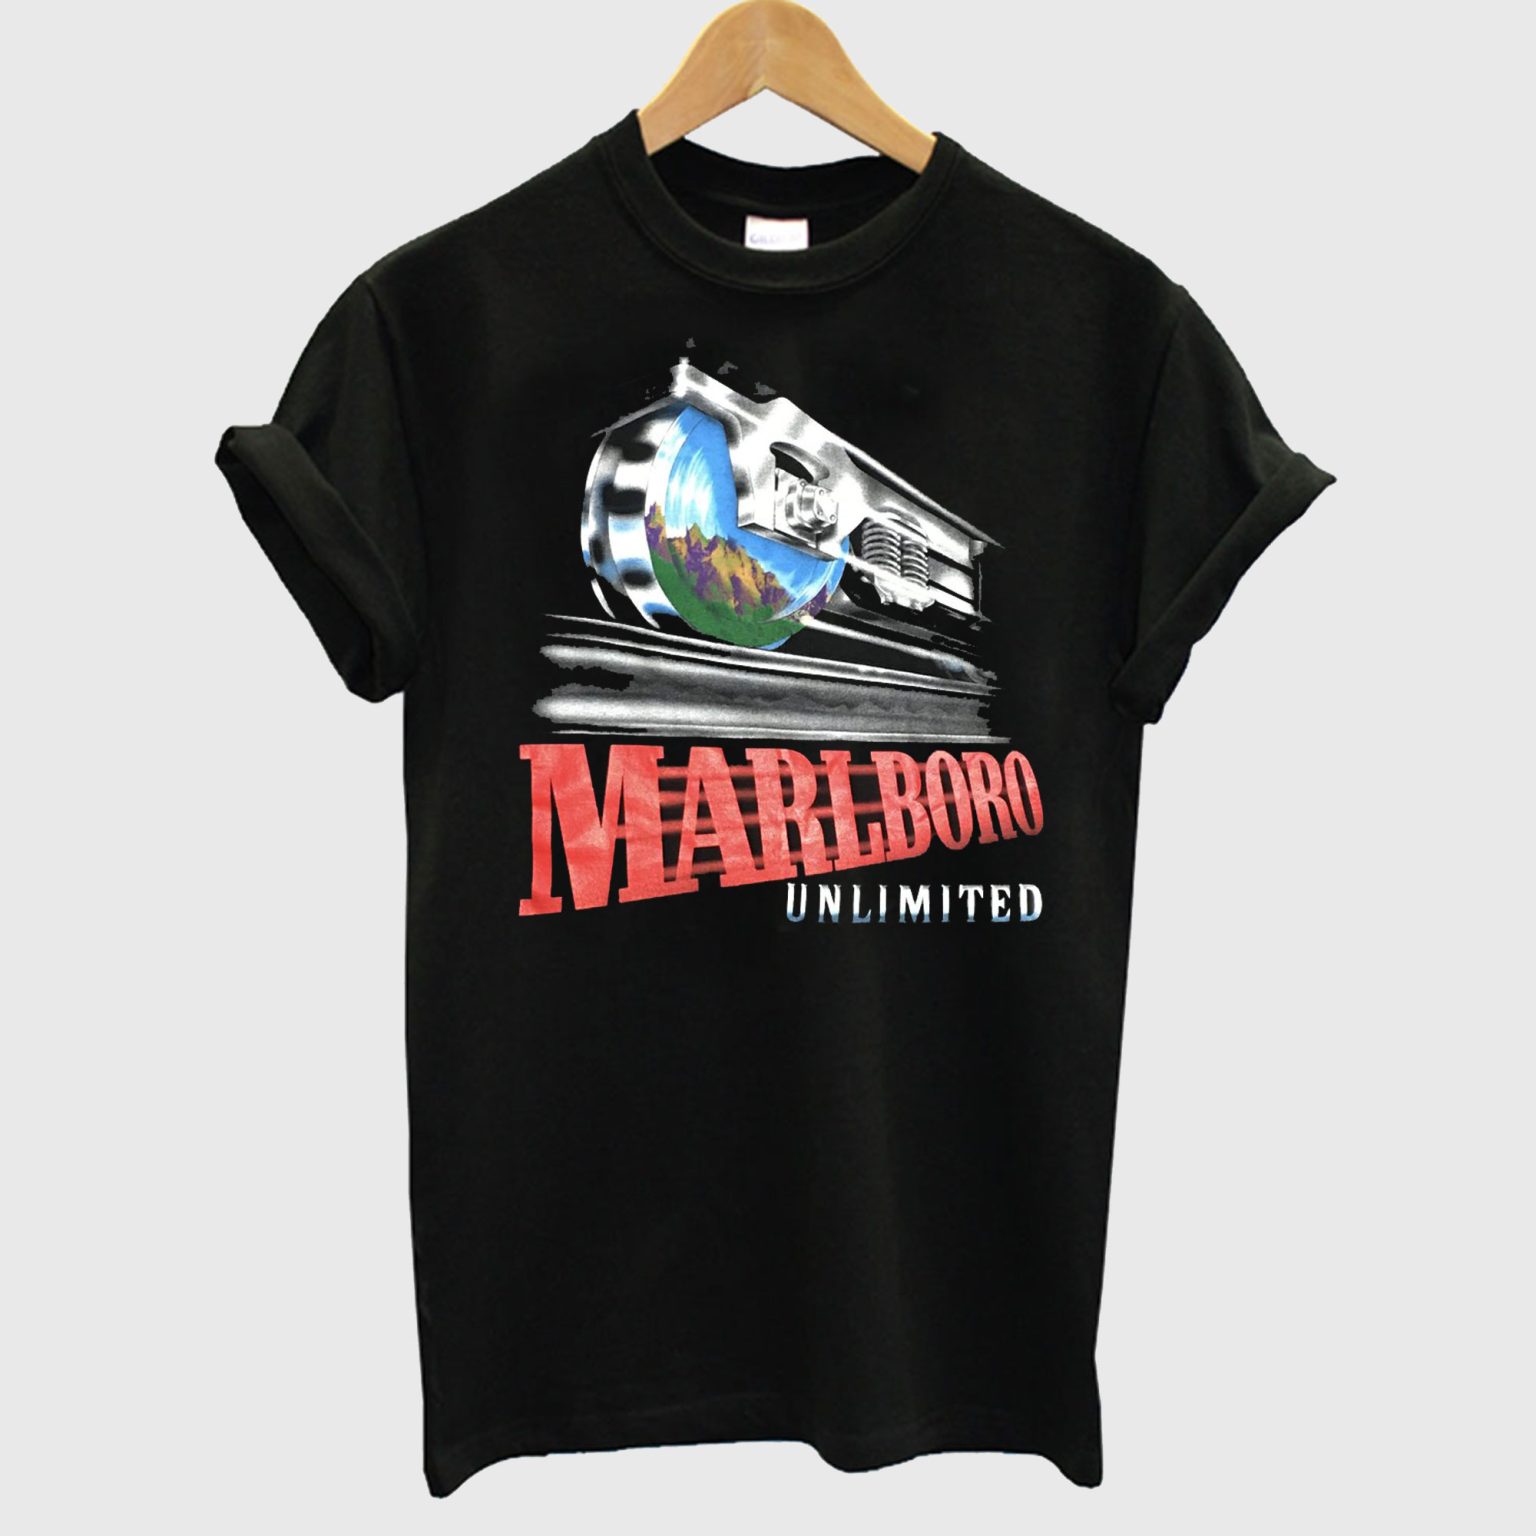 Unlimited Marlboro T shirt